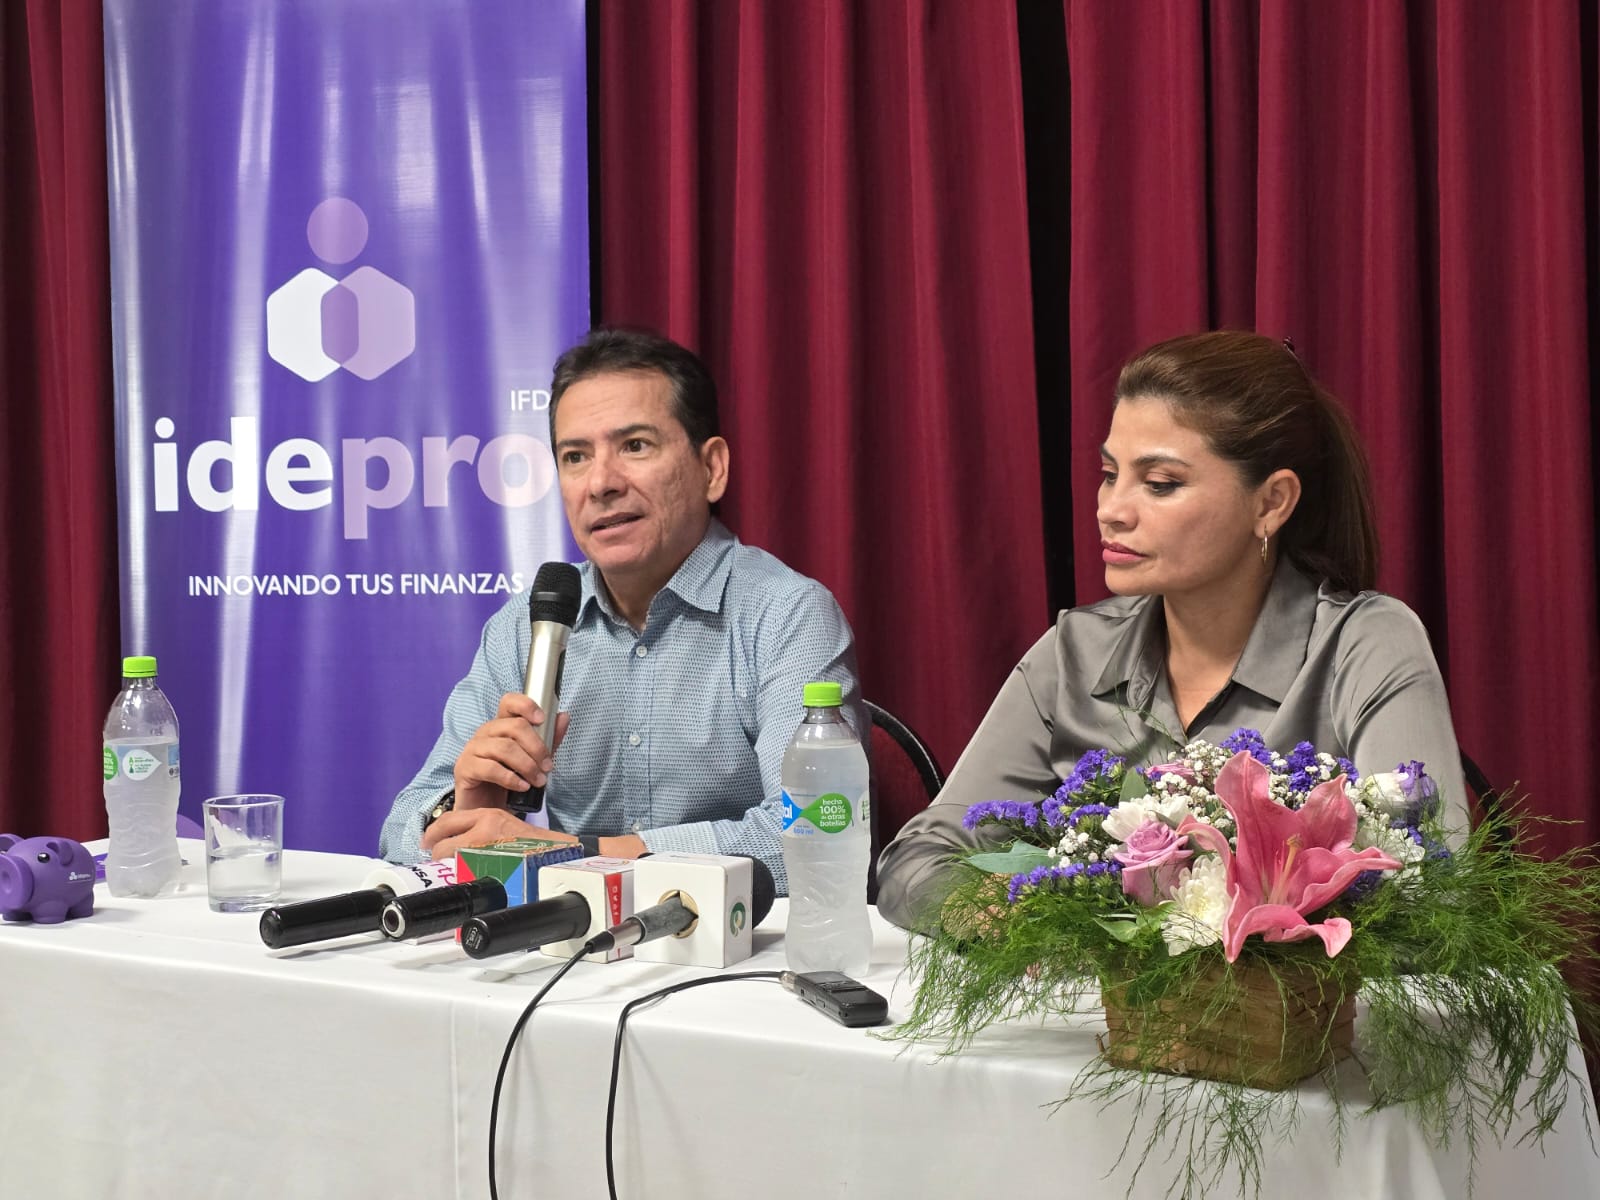 IDEPRO IFD expande su presencia en Santa Cruz y promete un futuro mejor para las microfinanzas   